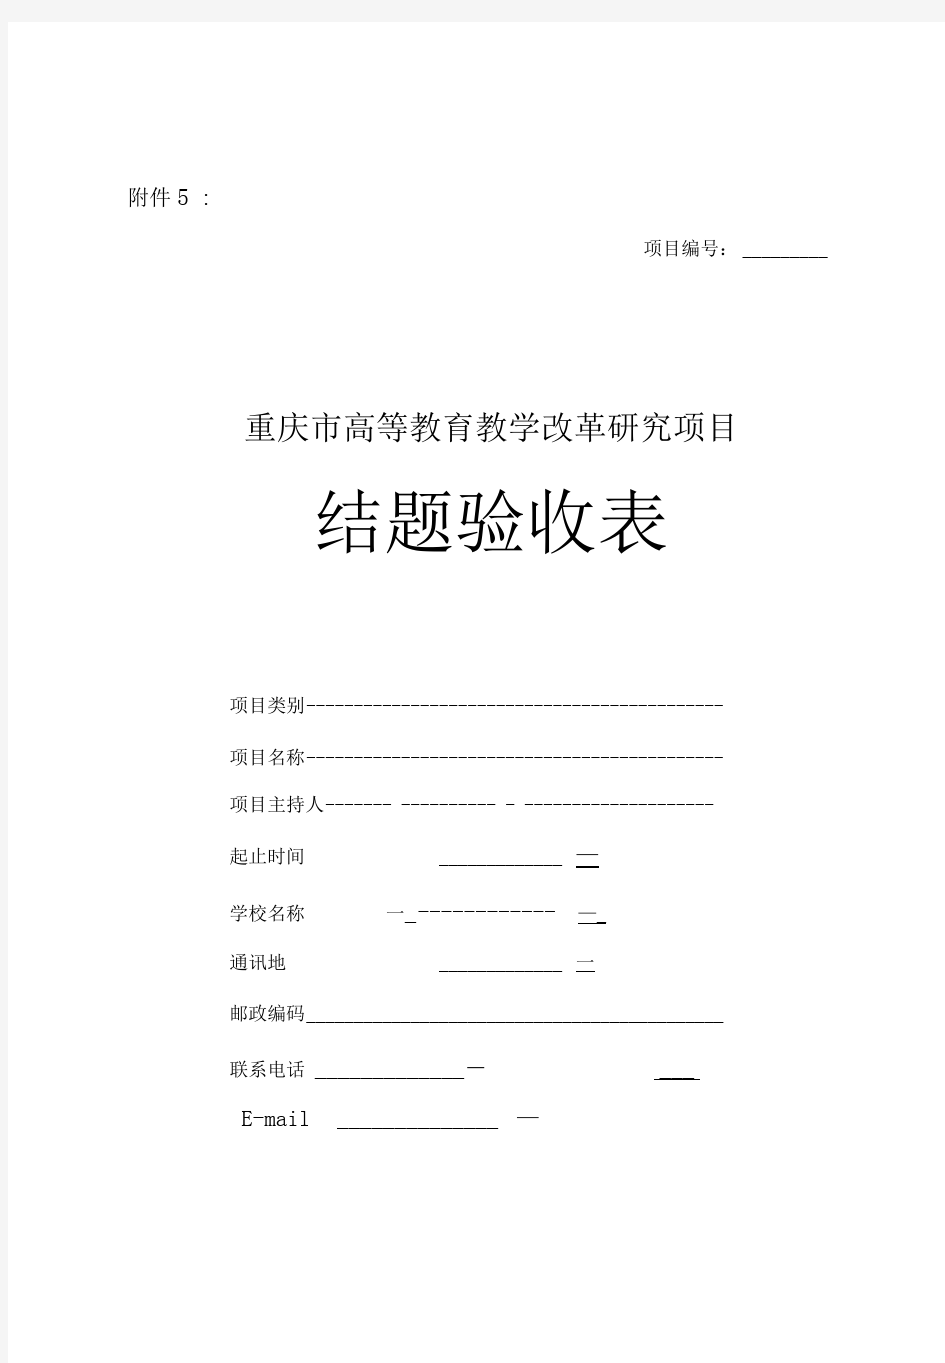 重庆教委教改项目结题验收材料装订顺序及样表